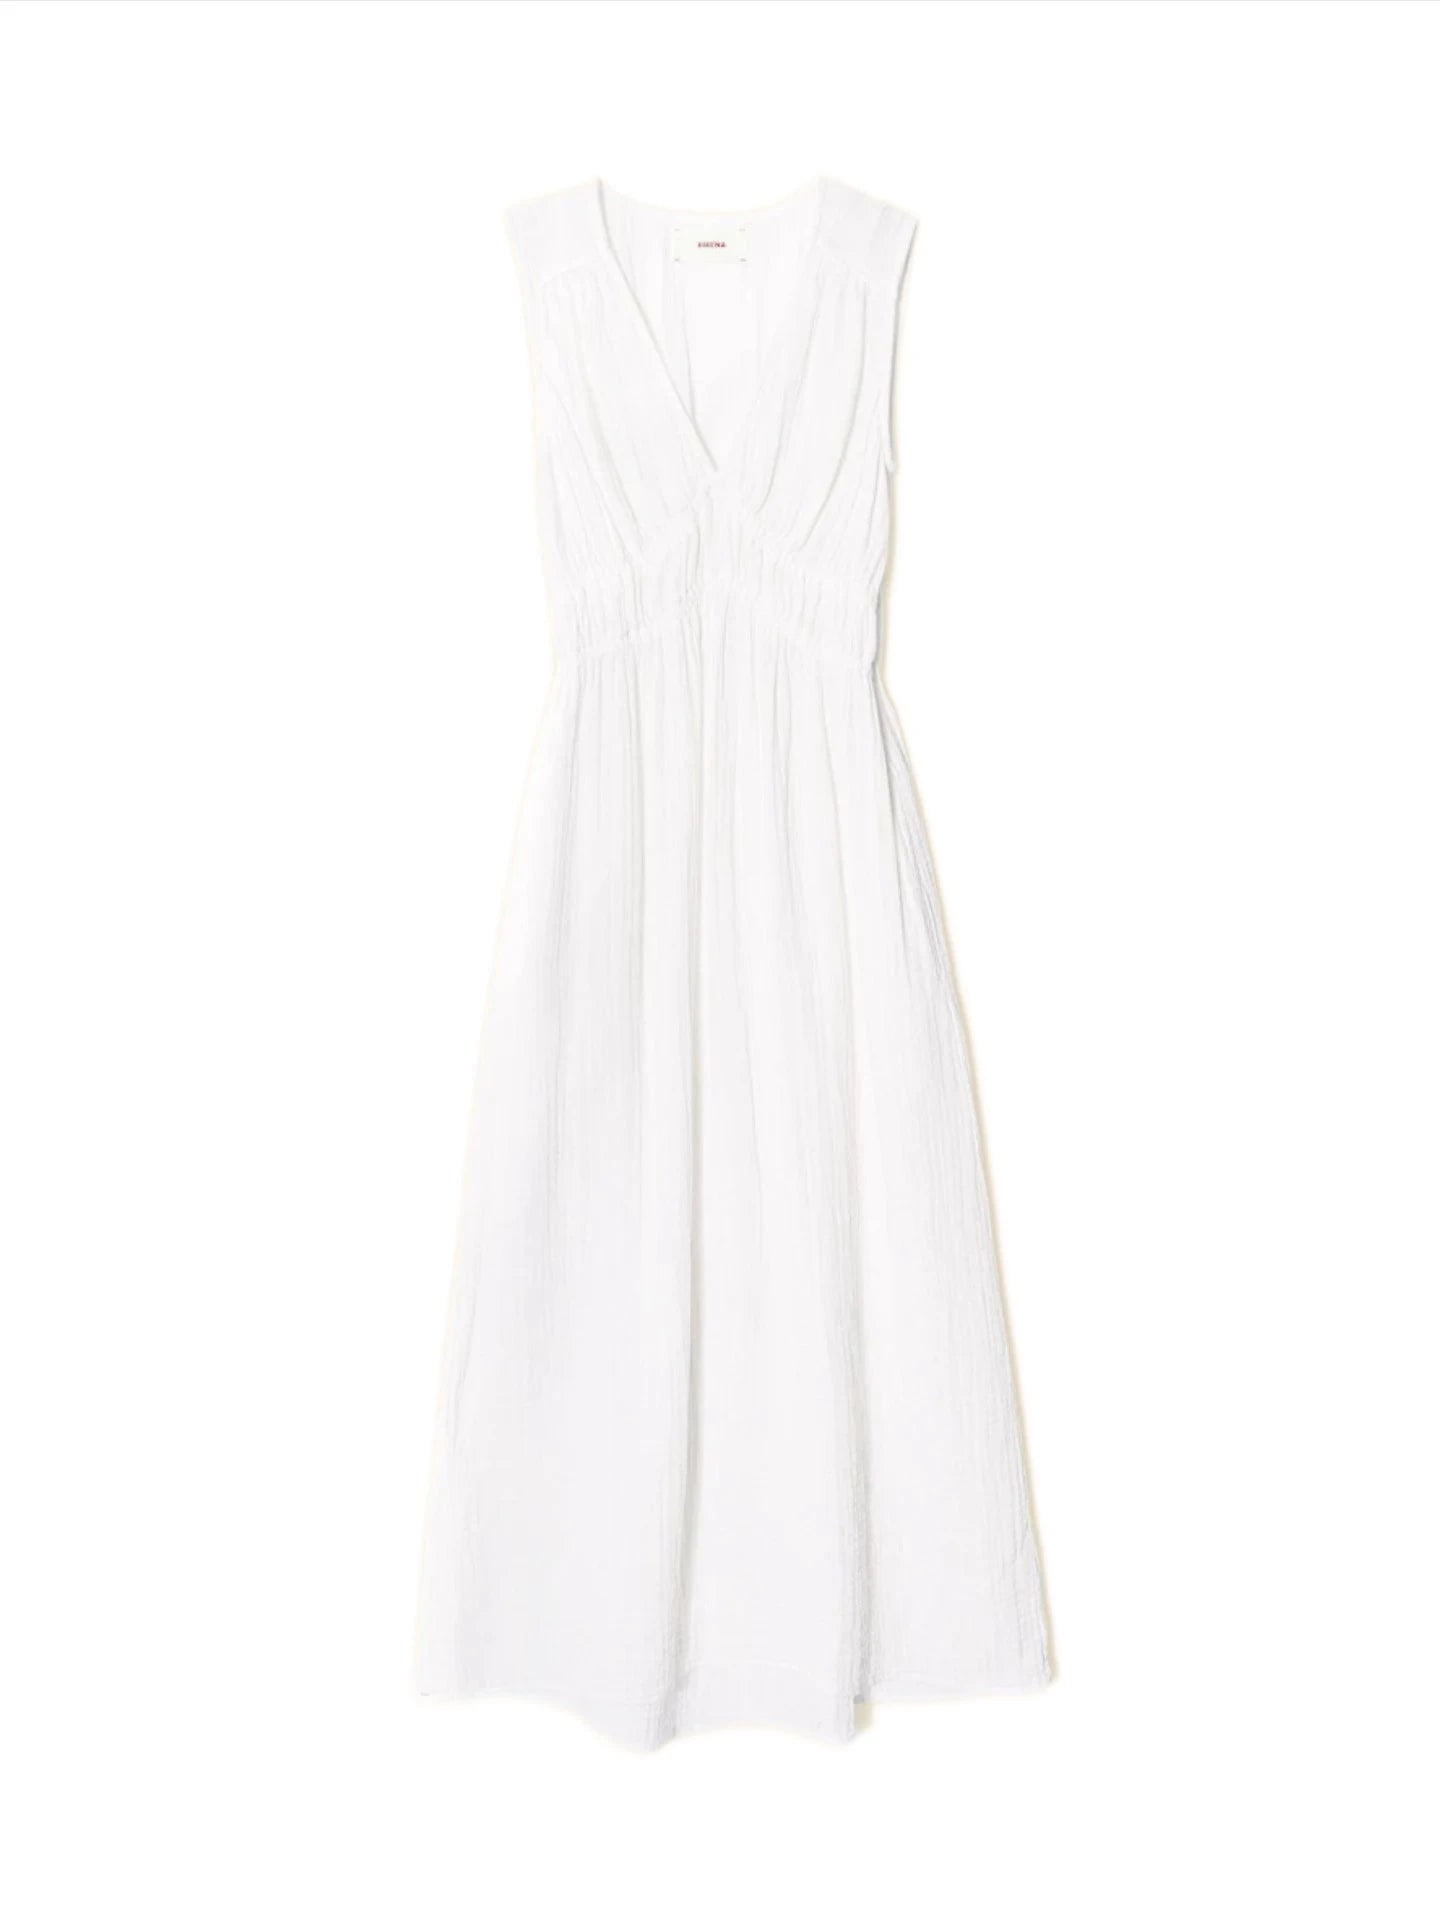 Arwen Dress in White